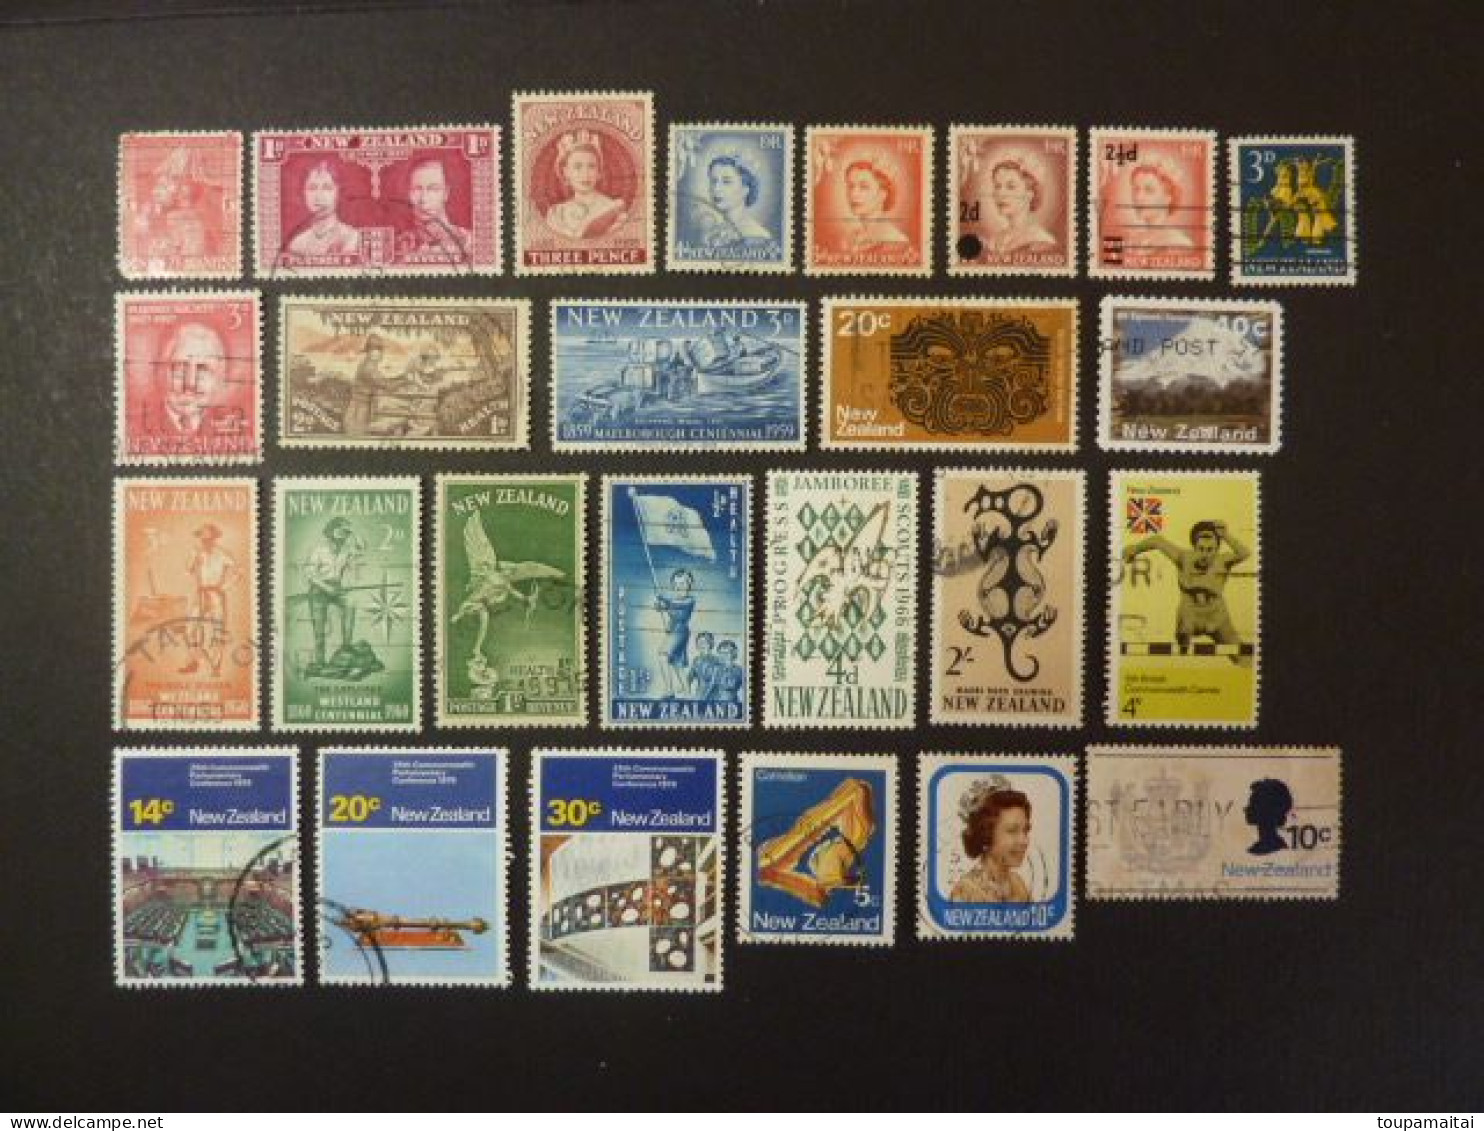 NOUVELLE-ZELANDE, années entre 1926 et 1966 1956-59, LOT de 48 TIMBRES NEUFS et OBLITERES (voir photos)